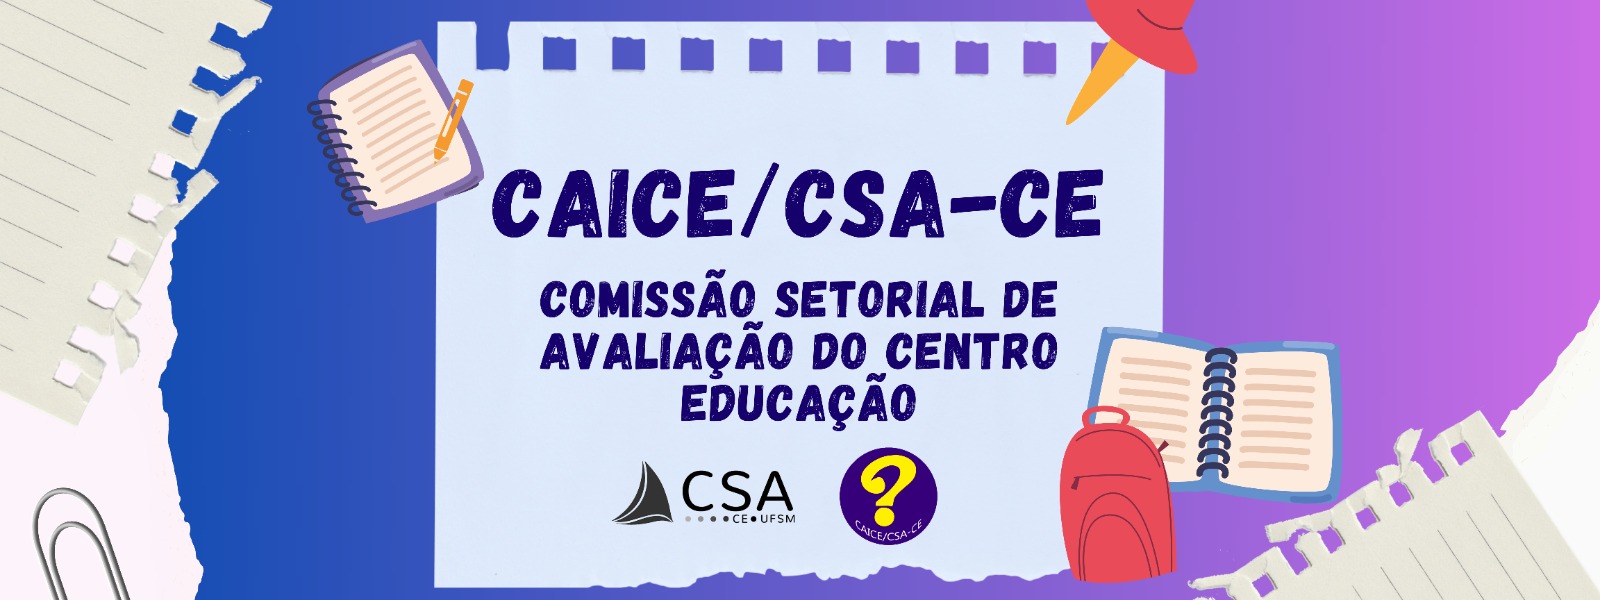 Banner fixo: CAICE/CSA-CE Comissão Setorial de Avaliação do Centro de Educação